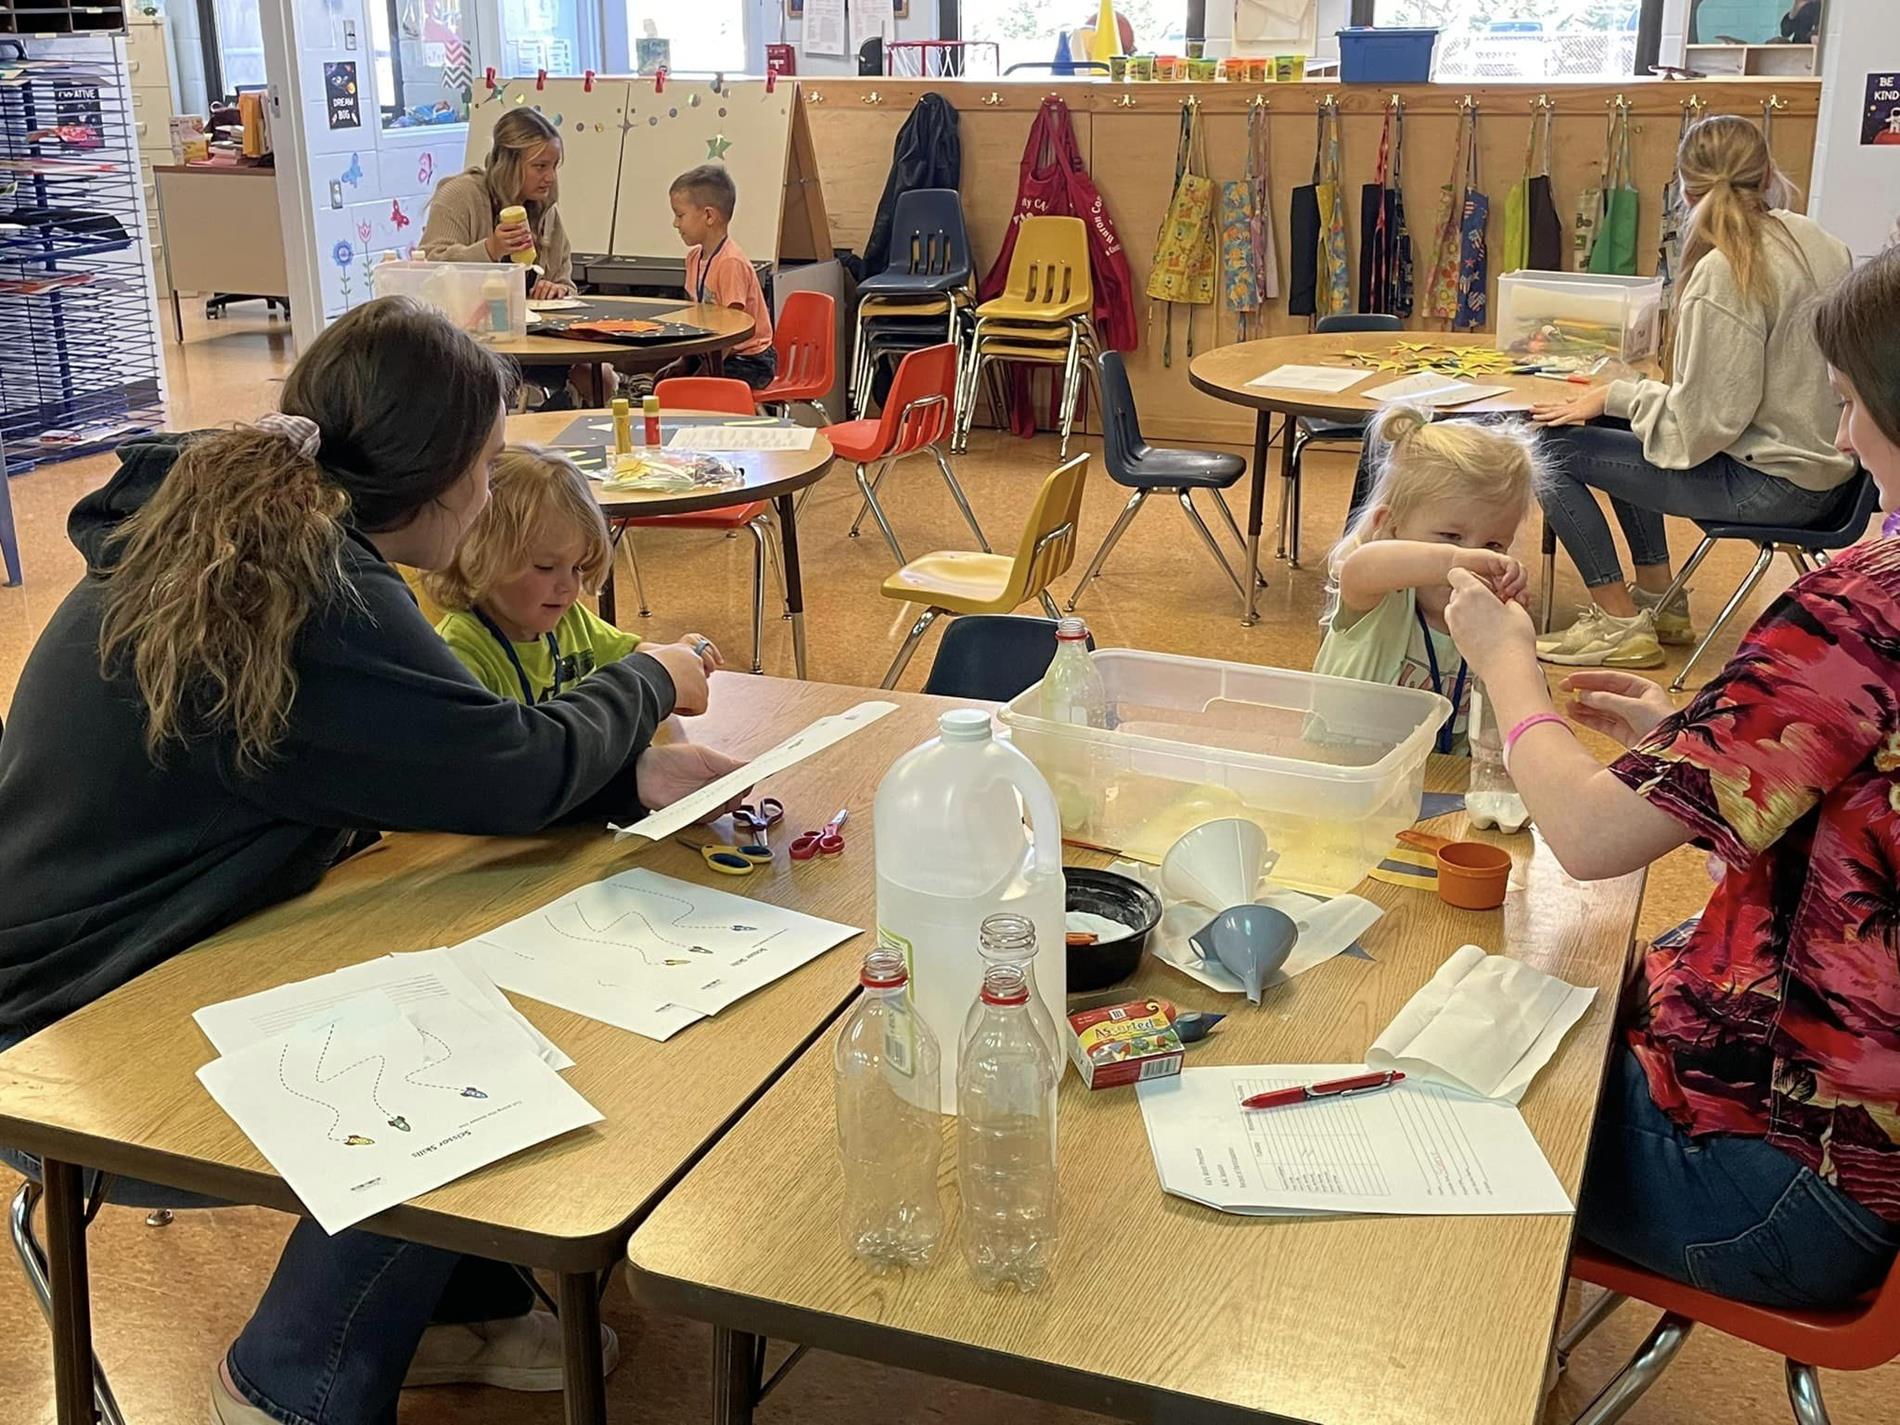 Students working hands-on in Kids' World Preschool.